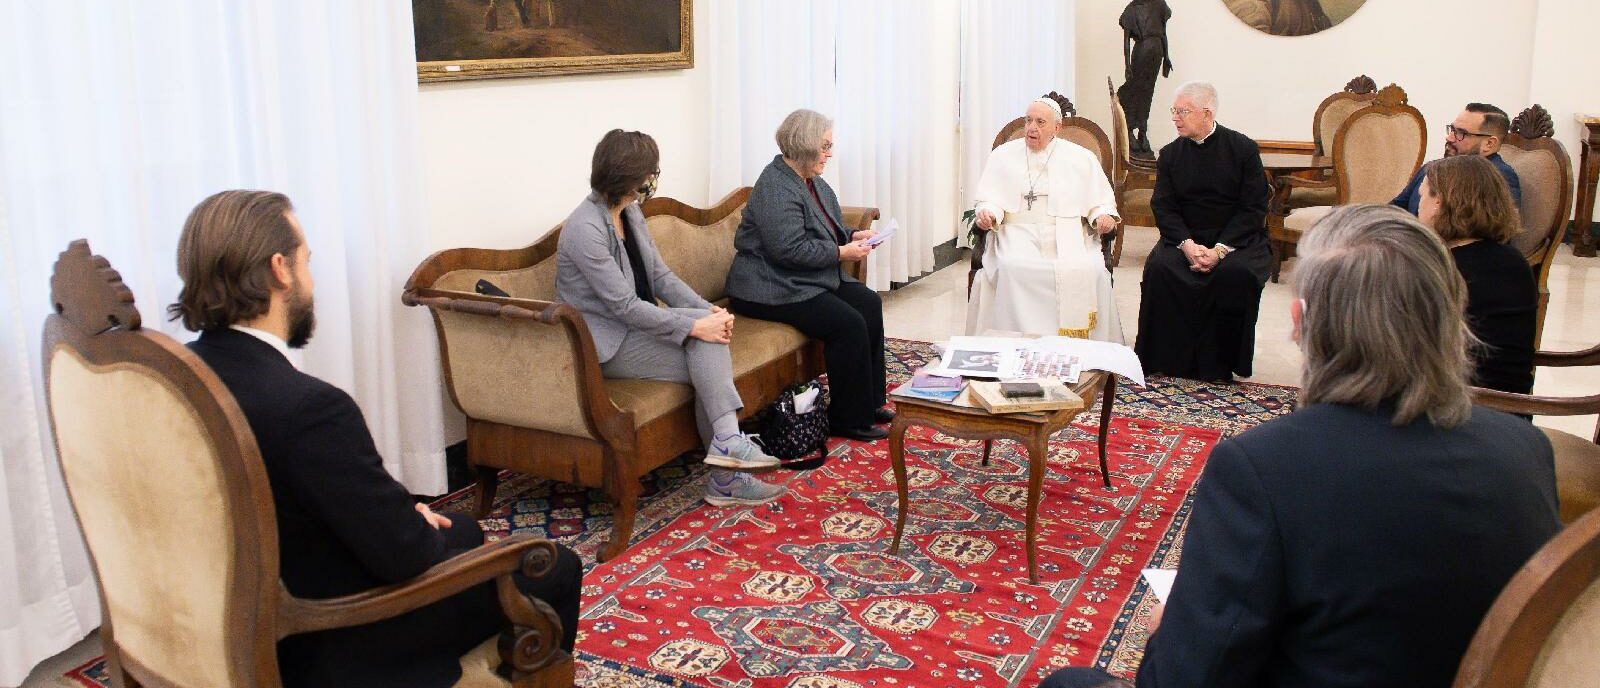 Une délégation de journalistes de CNS a été reçue par le pape | © Vatican Media/CNS Photo